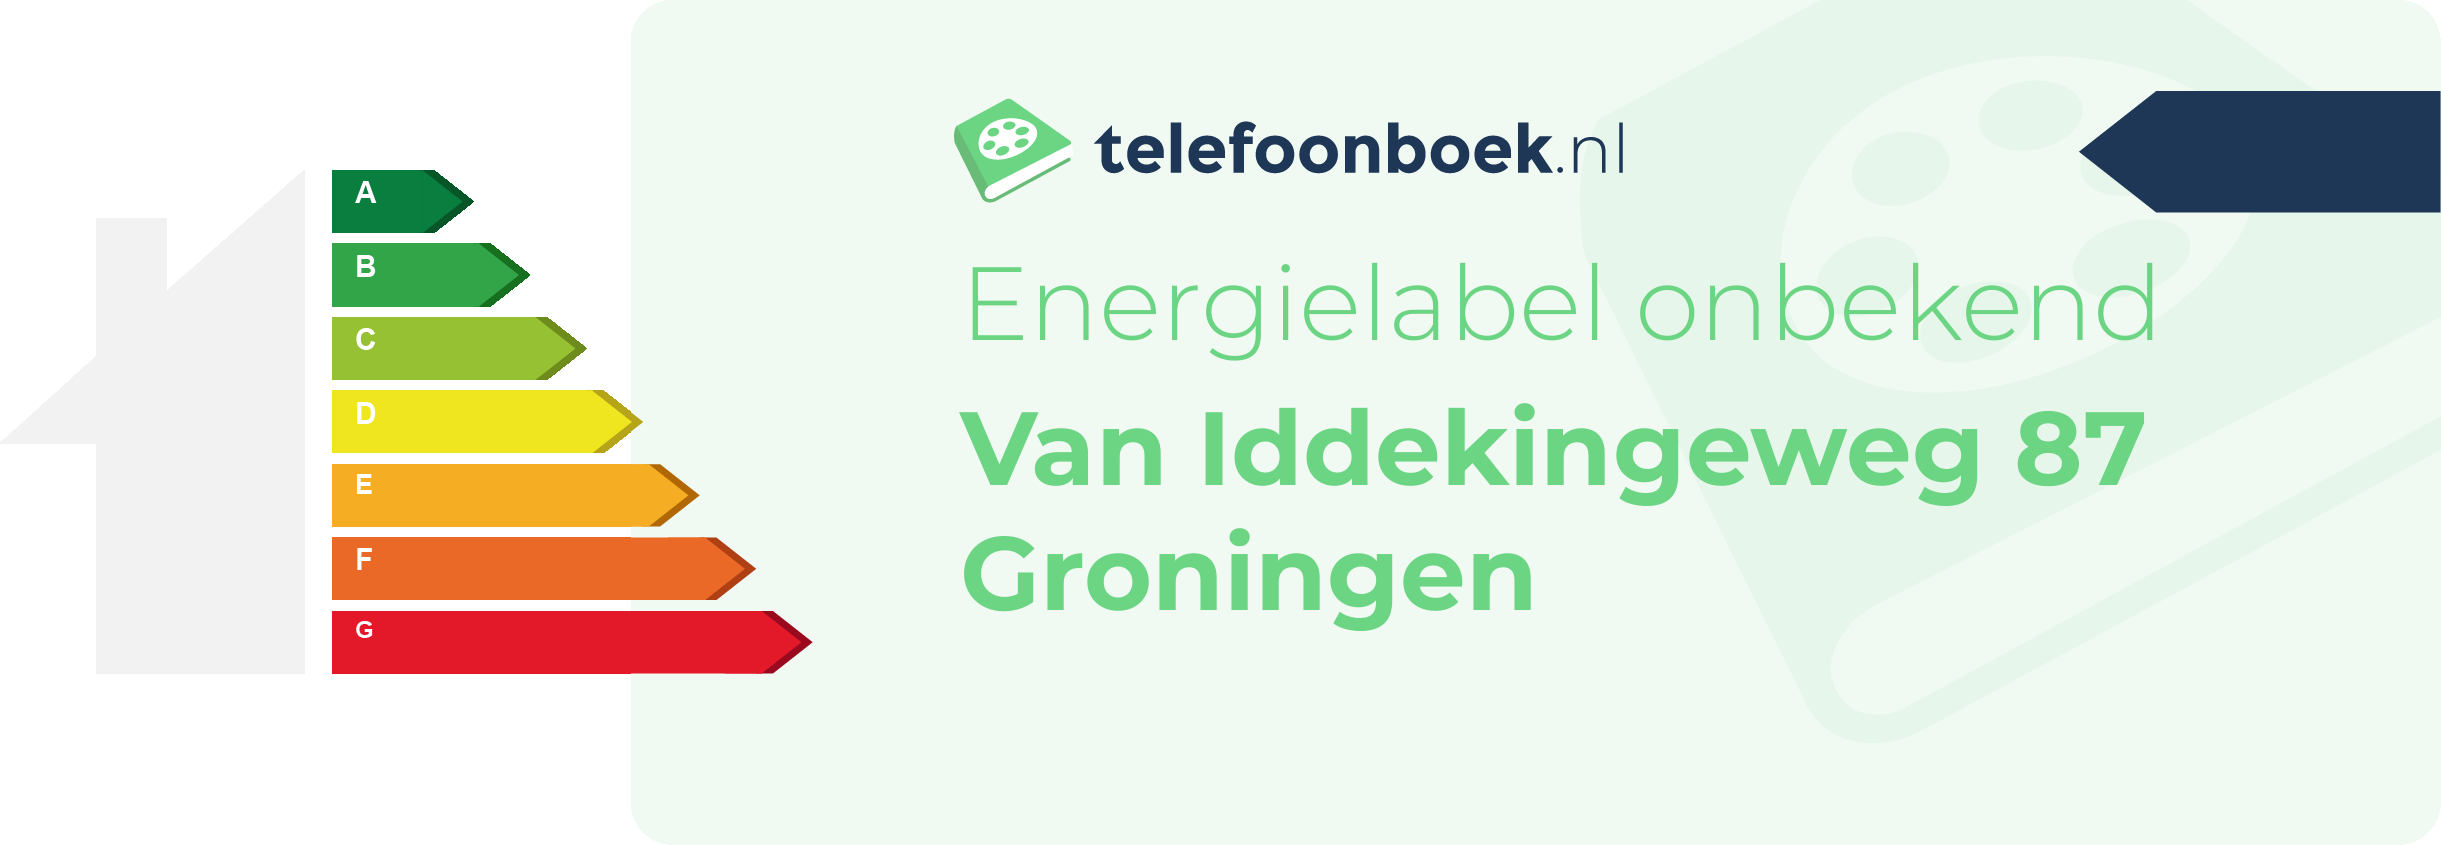 Energielabel Van Iddekingeweg 87 Groningen